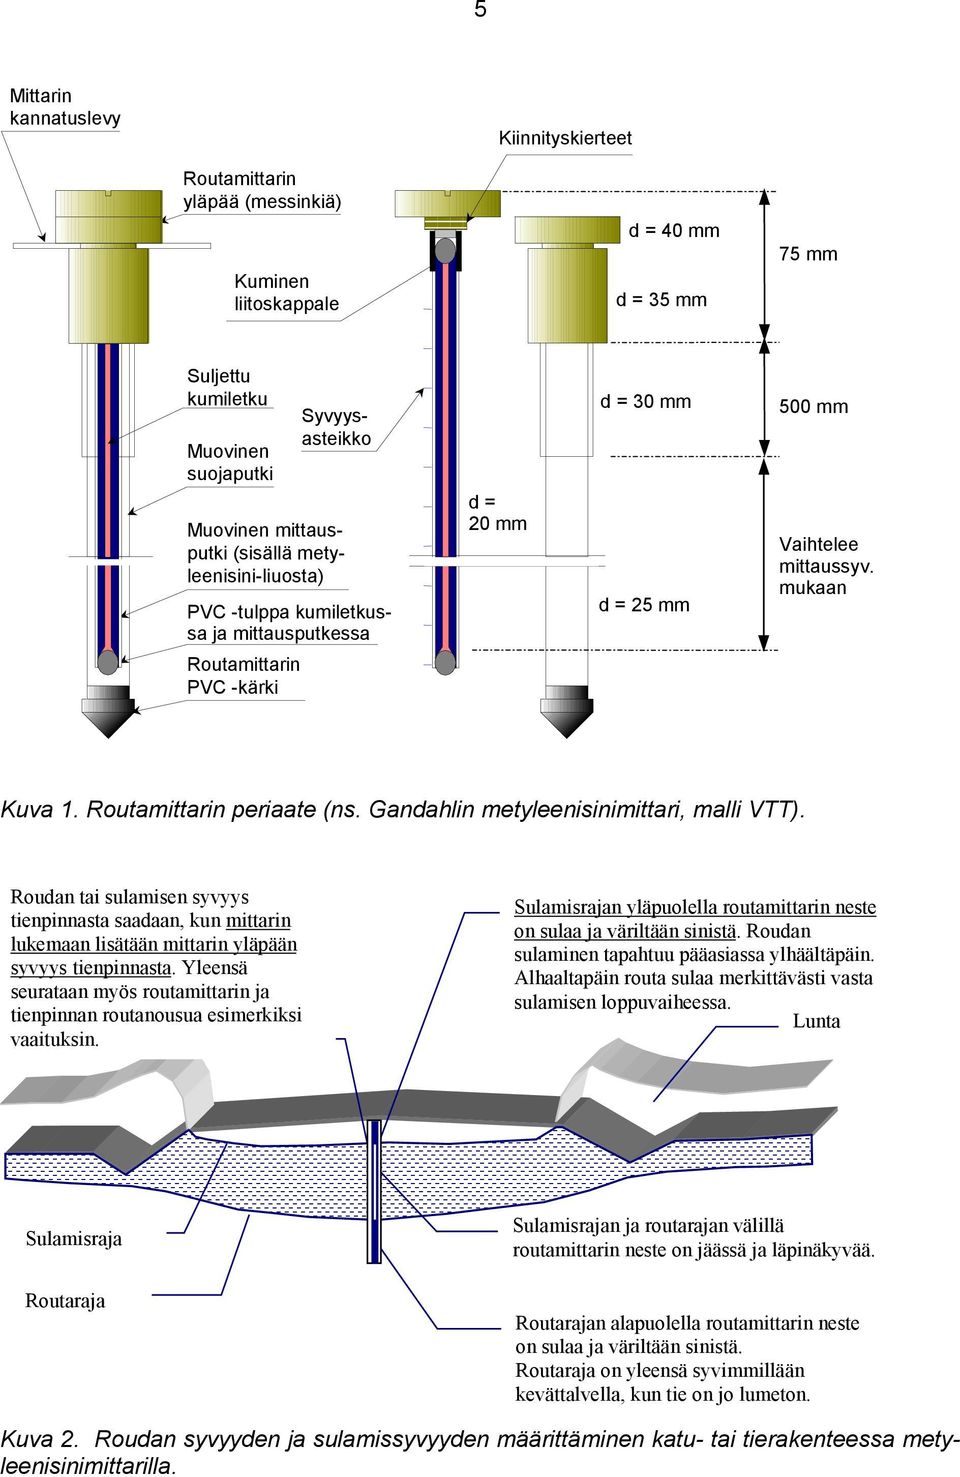 Routamittarin periaate (ns. Gandahlin metyleenisinimittari, malli VTT). Roudan tai sulamisen syvyys tienpinnasta saadaan, kun mittarin lukemaan lisätään mittarin yläpään syvyys tienpinnasta.